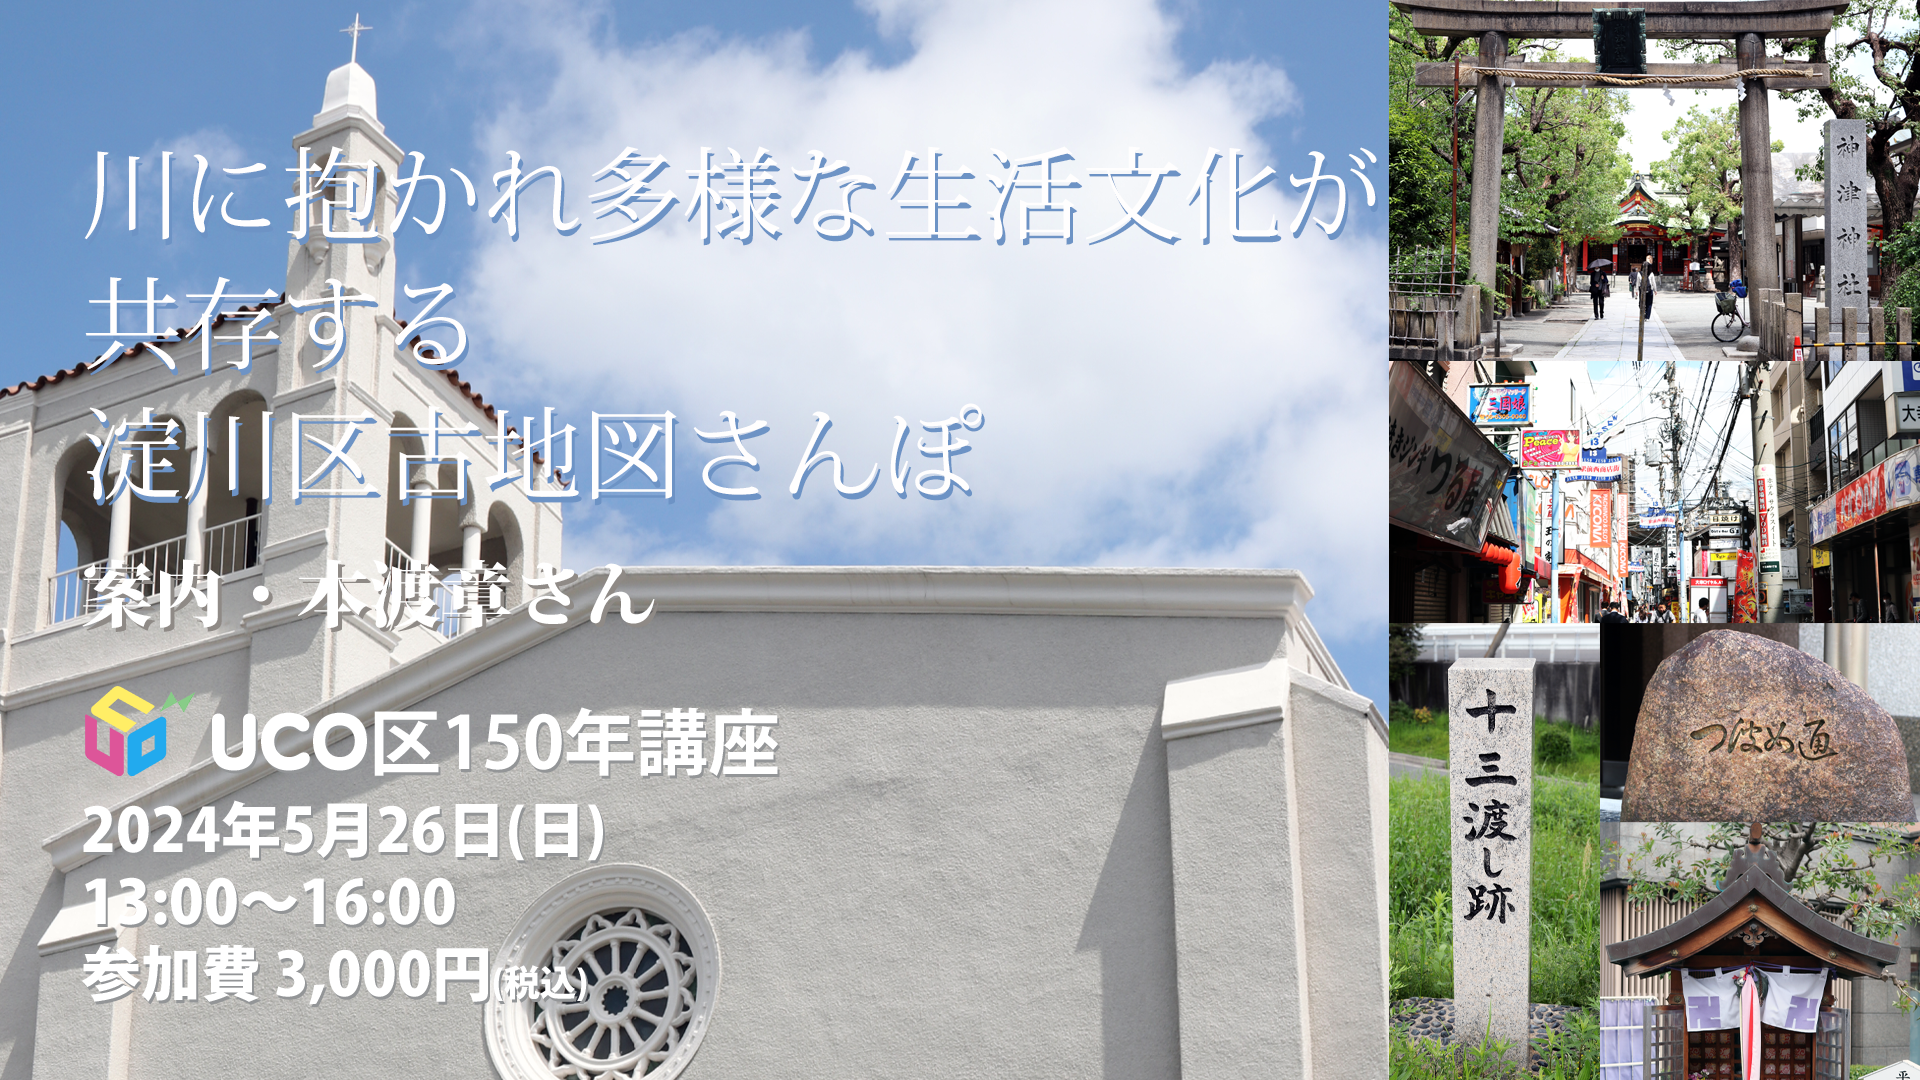 uco区150年講座 川に抱かれ多様な生活文化が共存する 淀川区古地図さんぽ